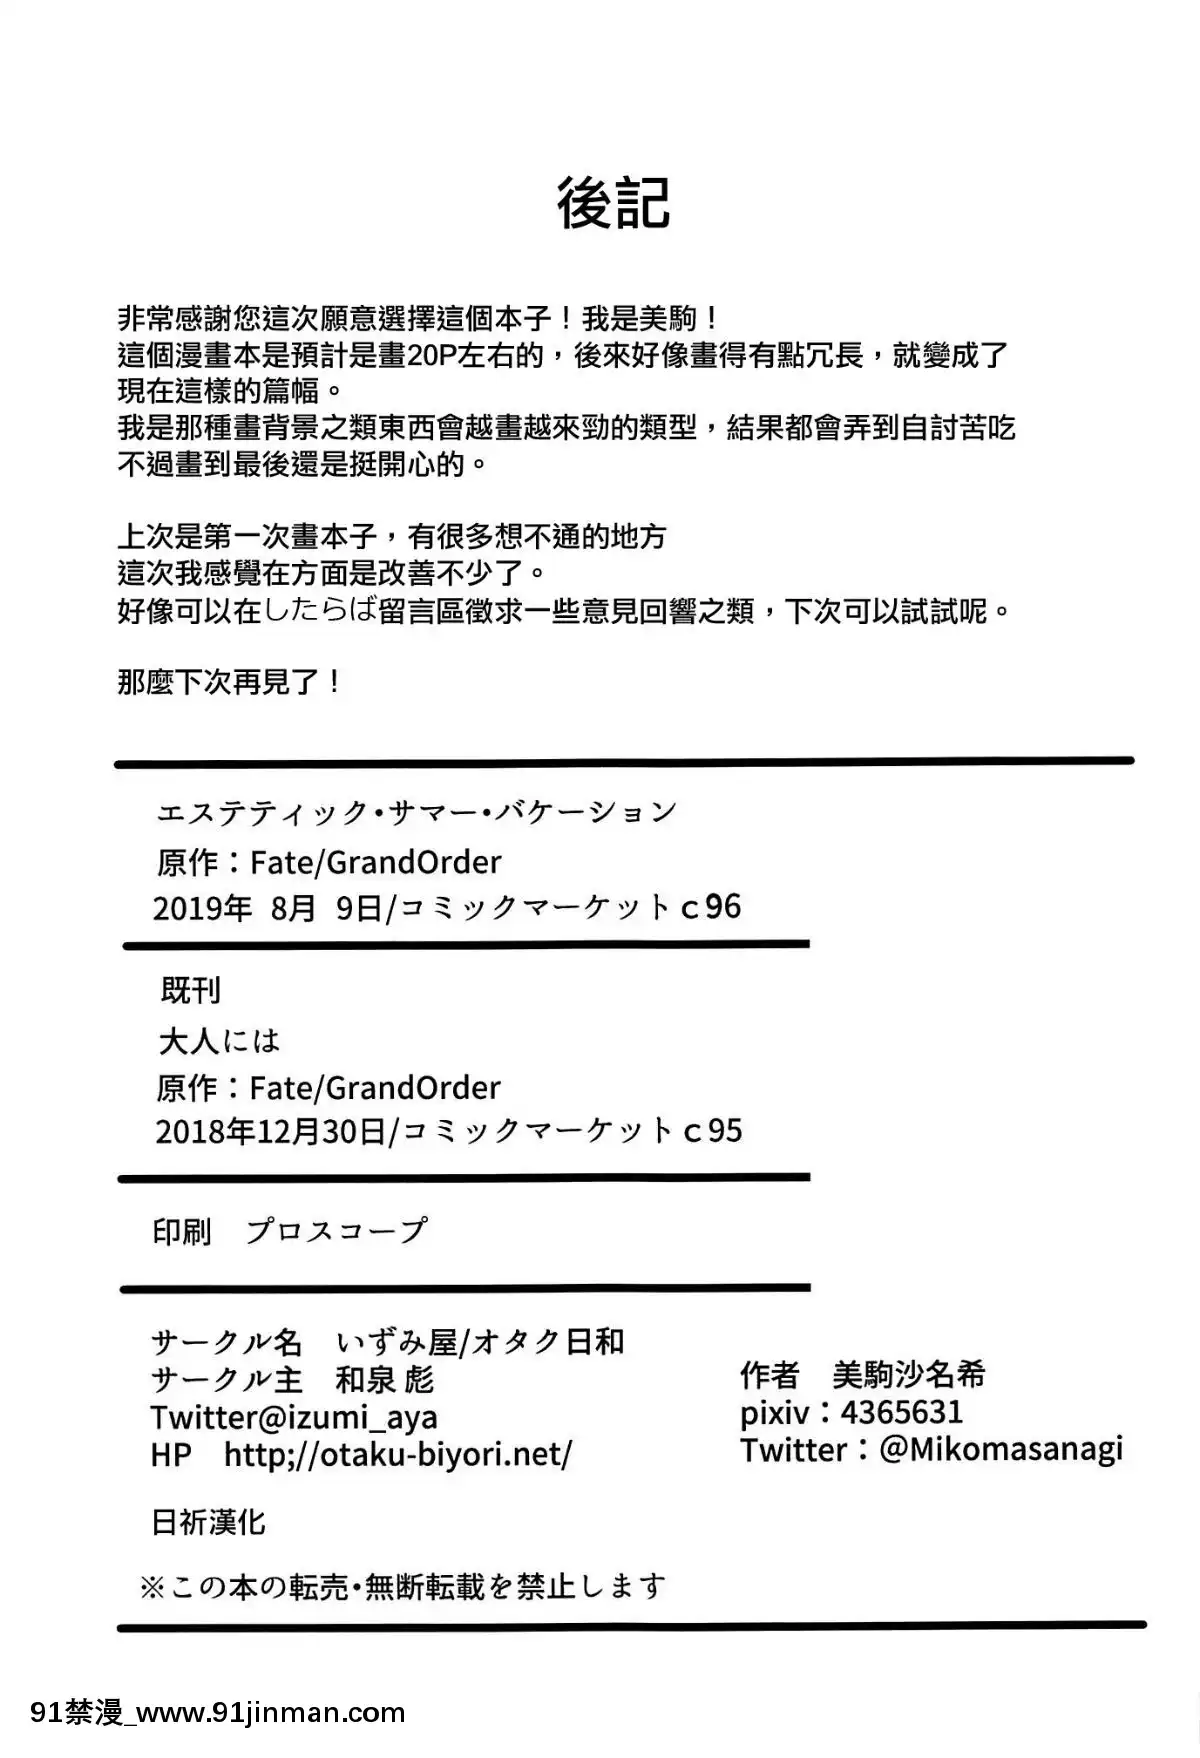 [Sun Prayer Trung] (C96) [Izumiya (Mikan Sanaki)] Kỳ nghỉ hè giả tạo (Fate GrandOrder)【hình ảnh truyện tranh hài】